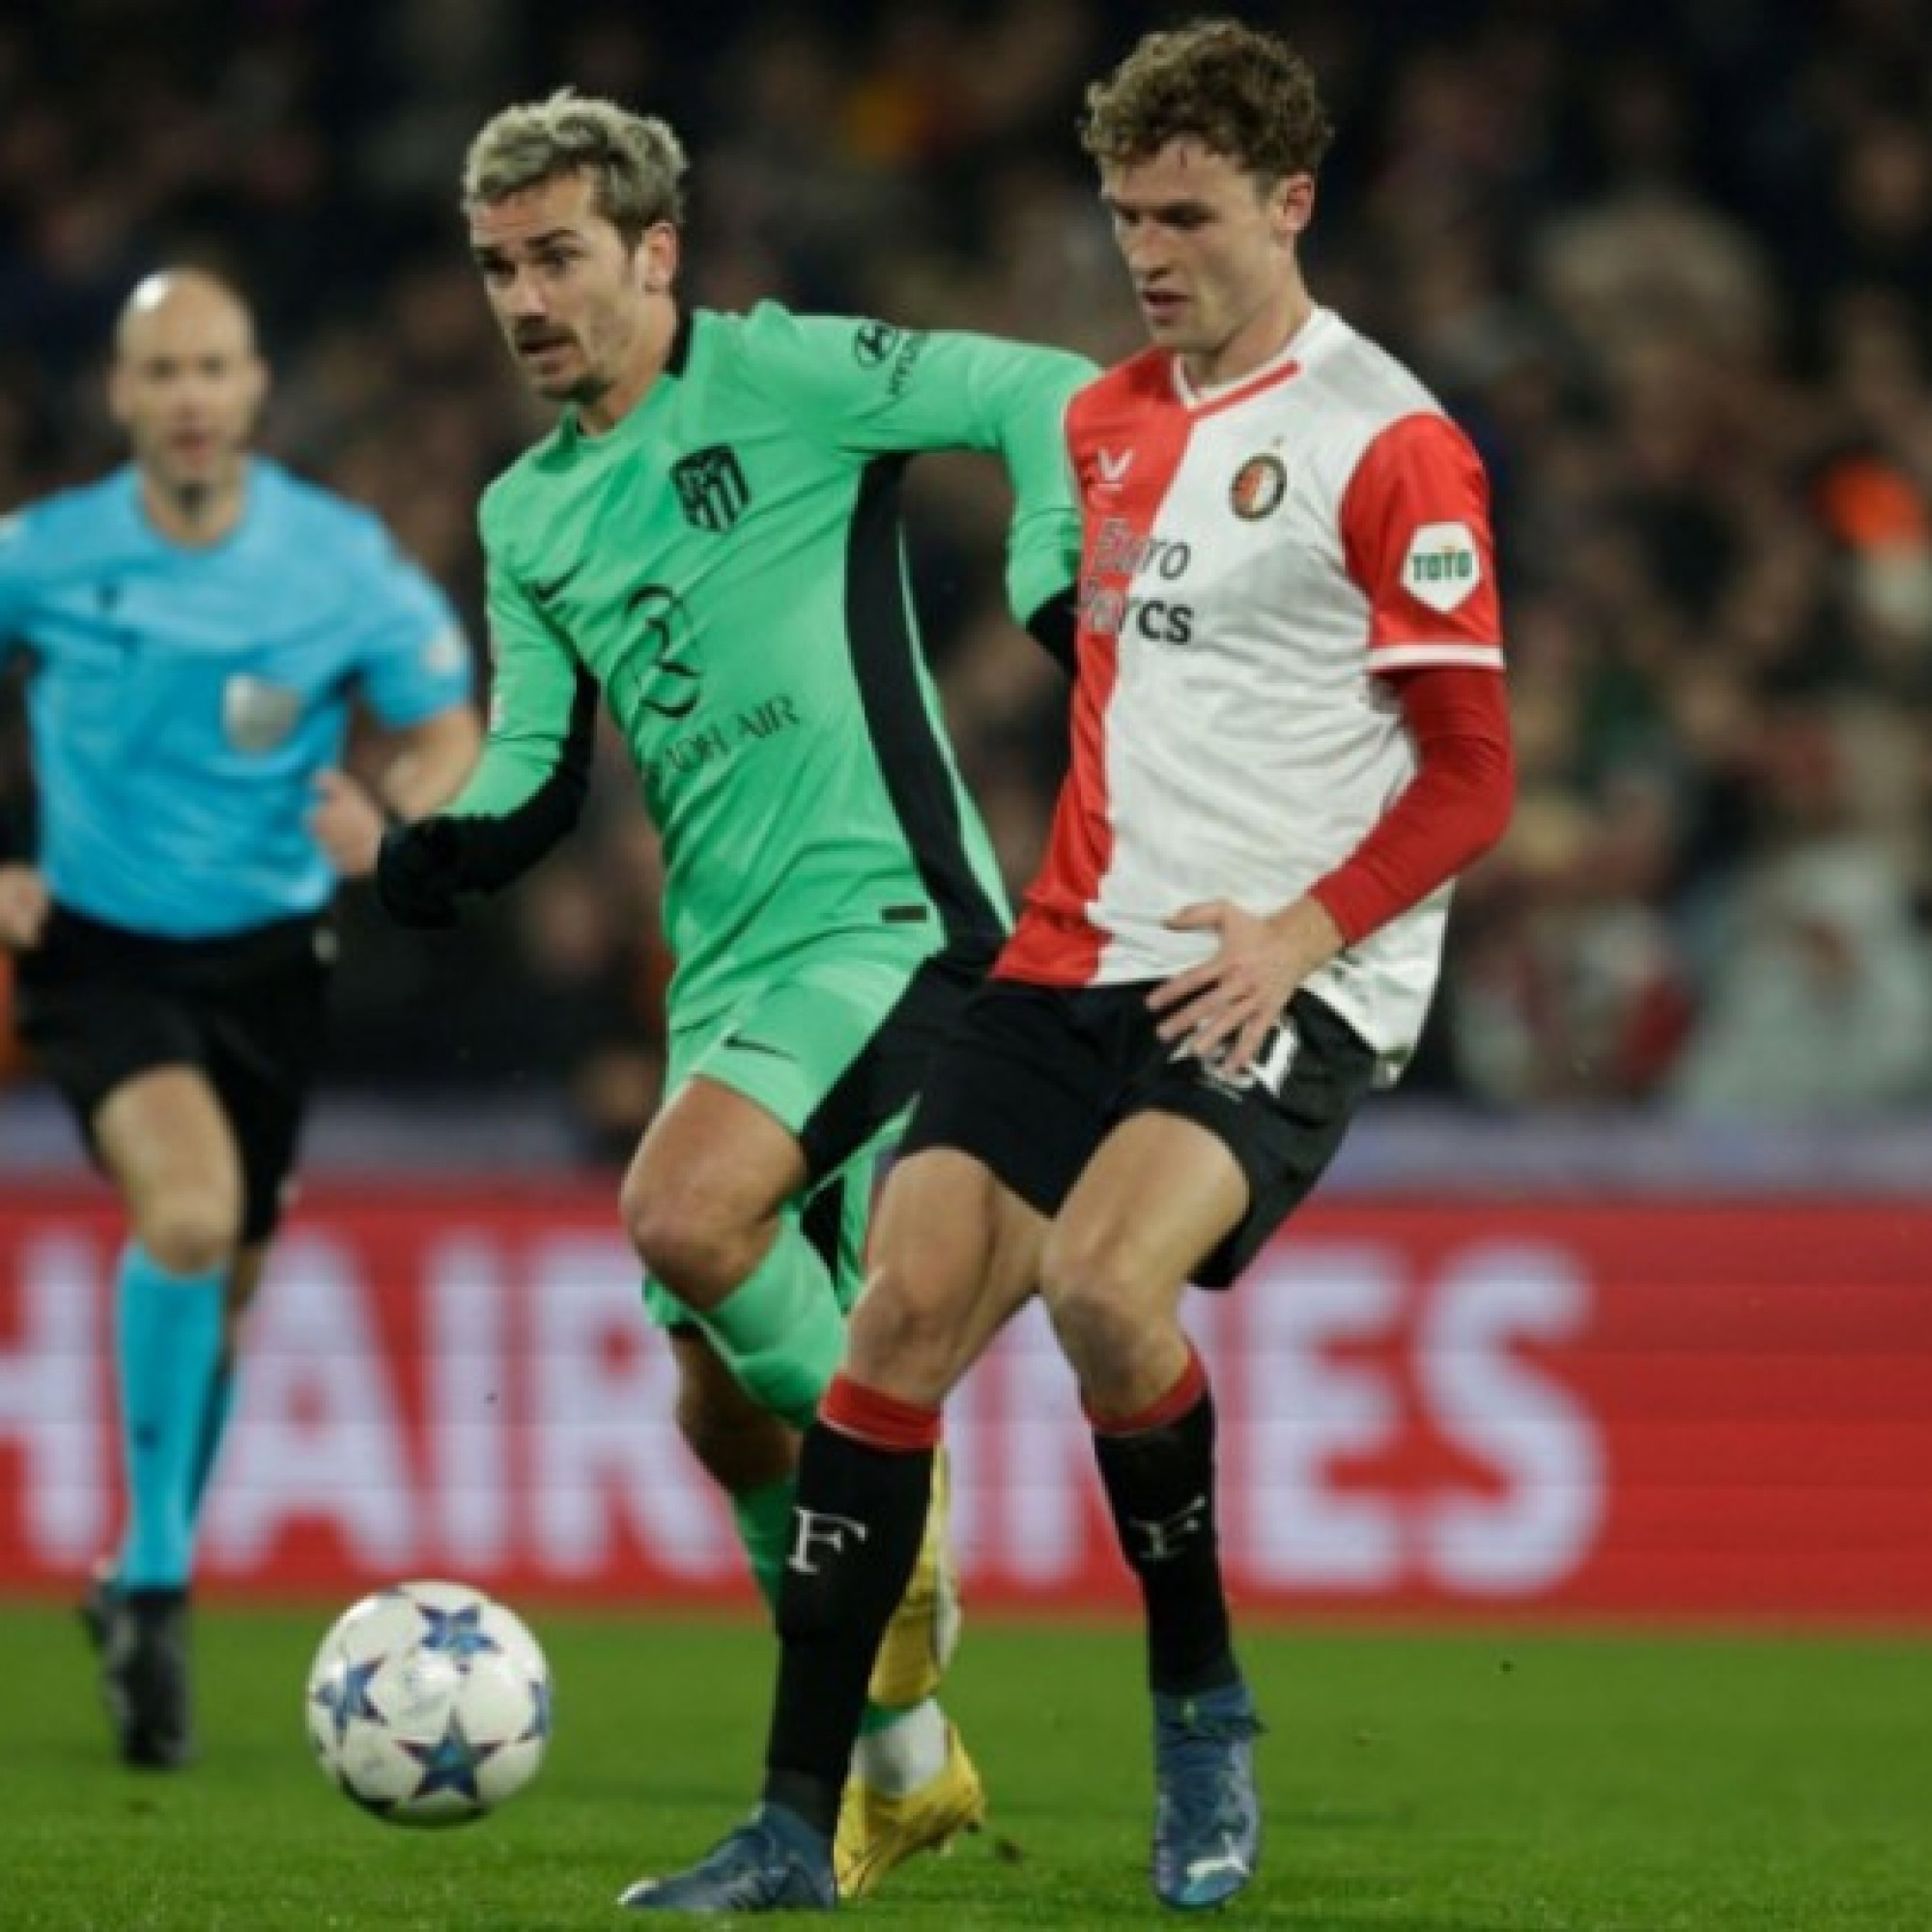  - Video bóng đá Feyenoord - Atletico: 2 bàn phản lưới, niềm vui nhân đôi (Cúp C1)